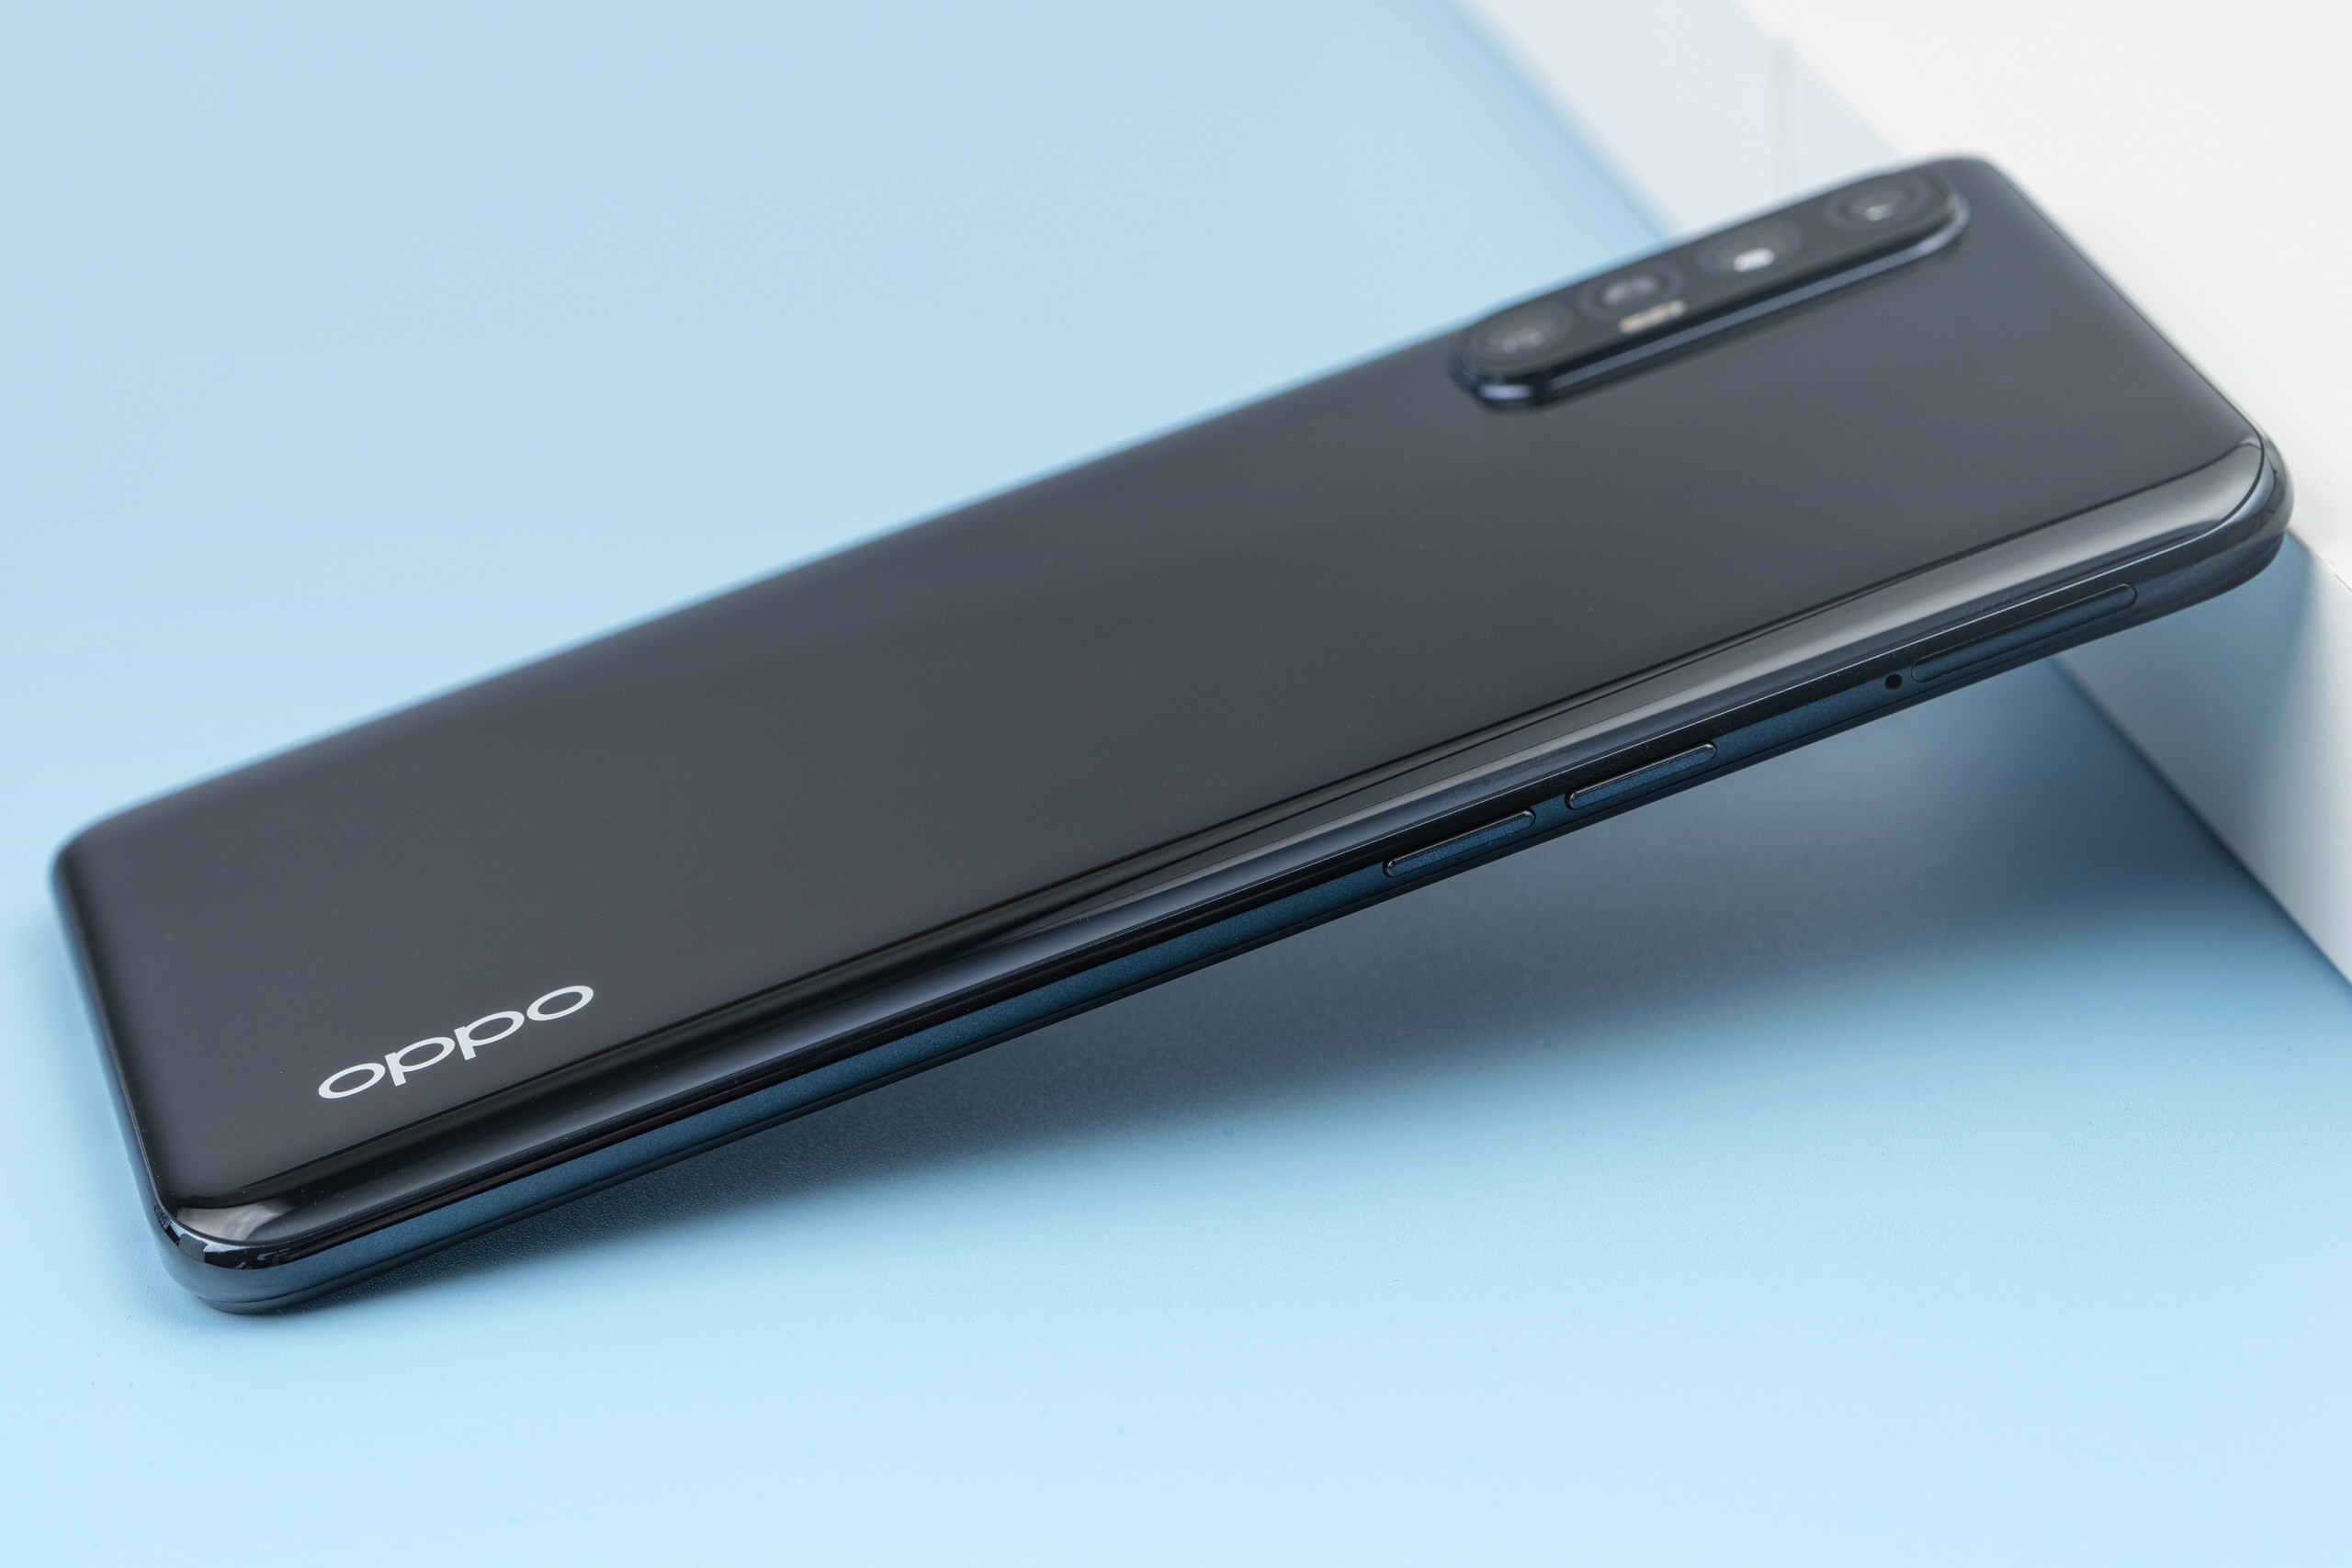 Mở hộp OPPO Reno3 Pro: Chuyên gia selfie với camera 64MP cùng cấu hình chiến game khủng Helio P95